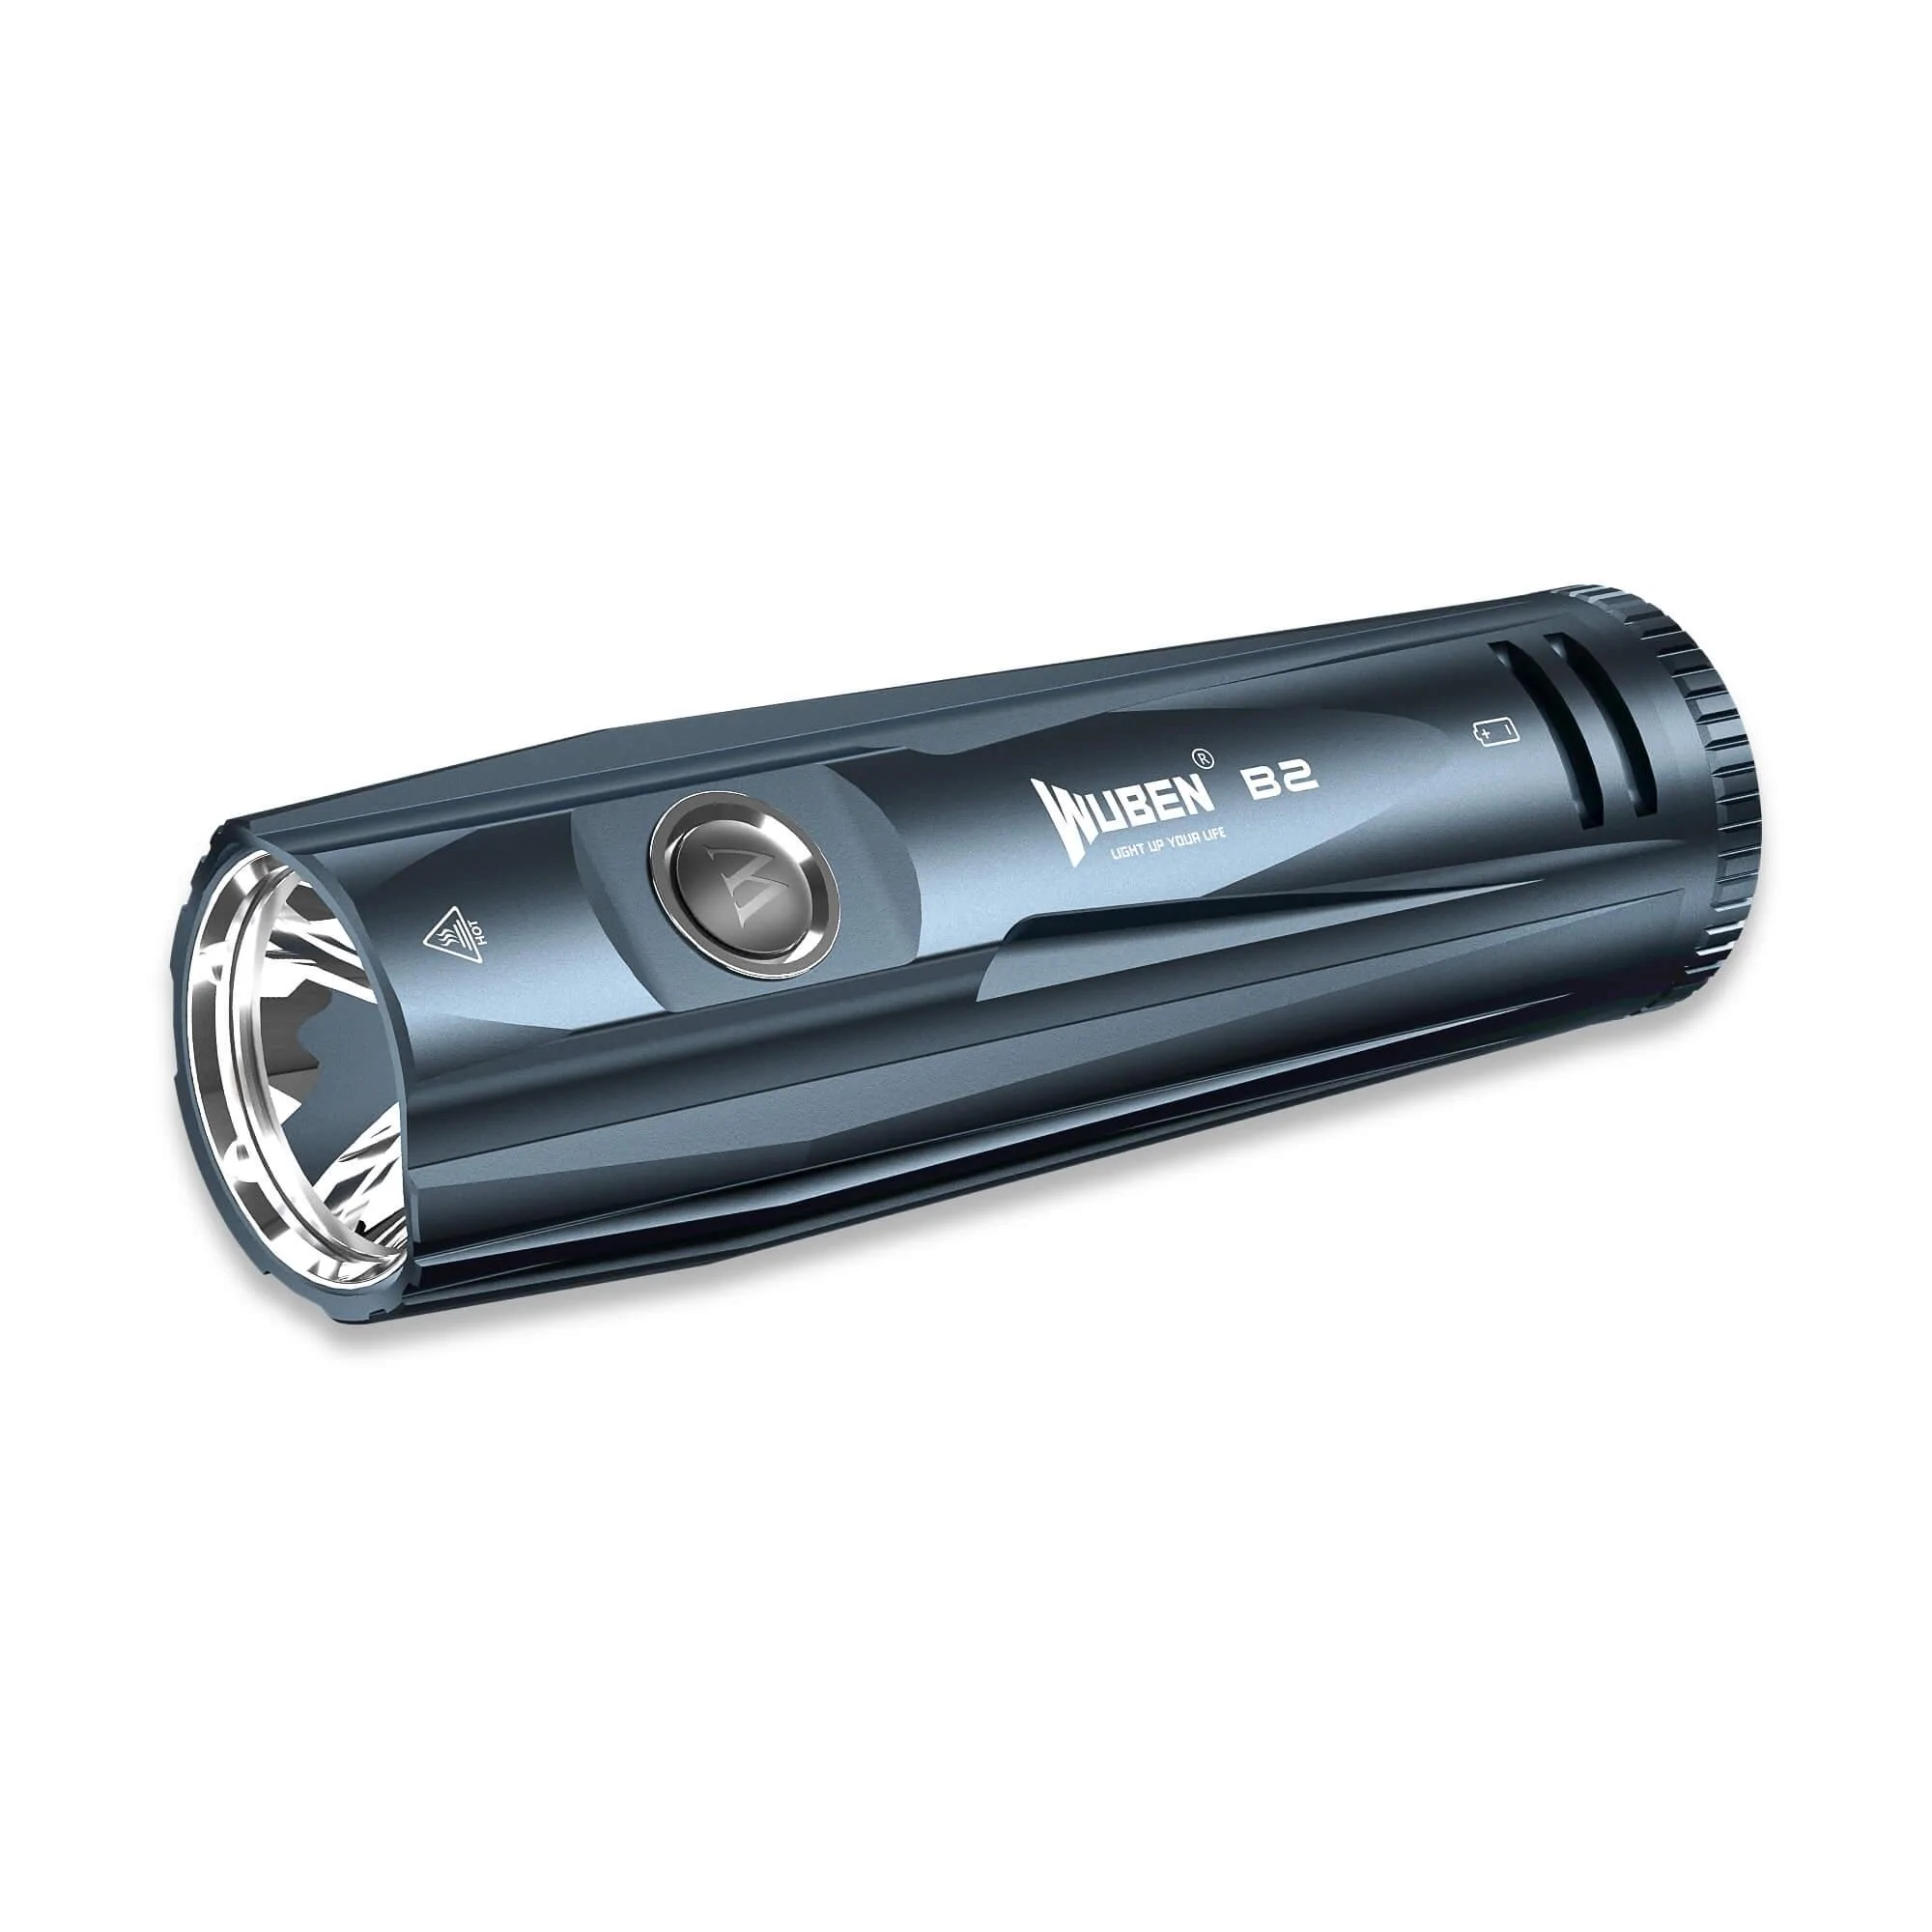 Wuben B2 OSRAM P9 LED 1300 Lumens USB Rechargeable Bike Light